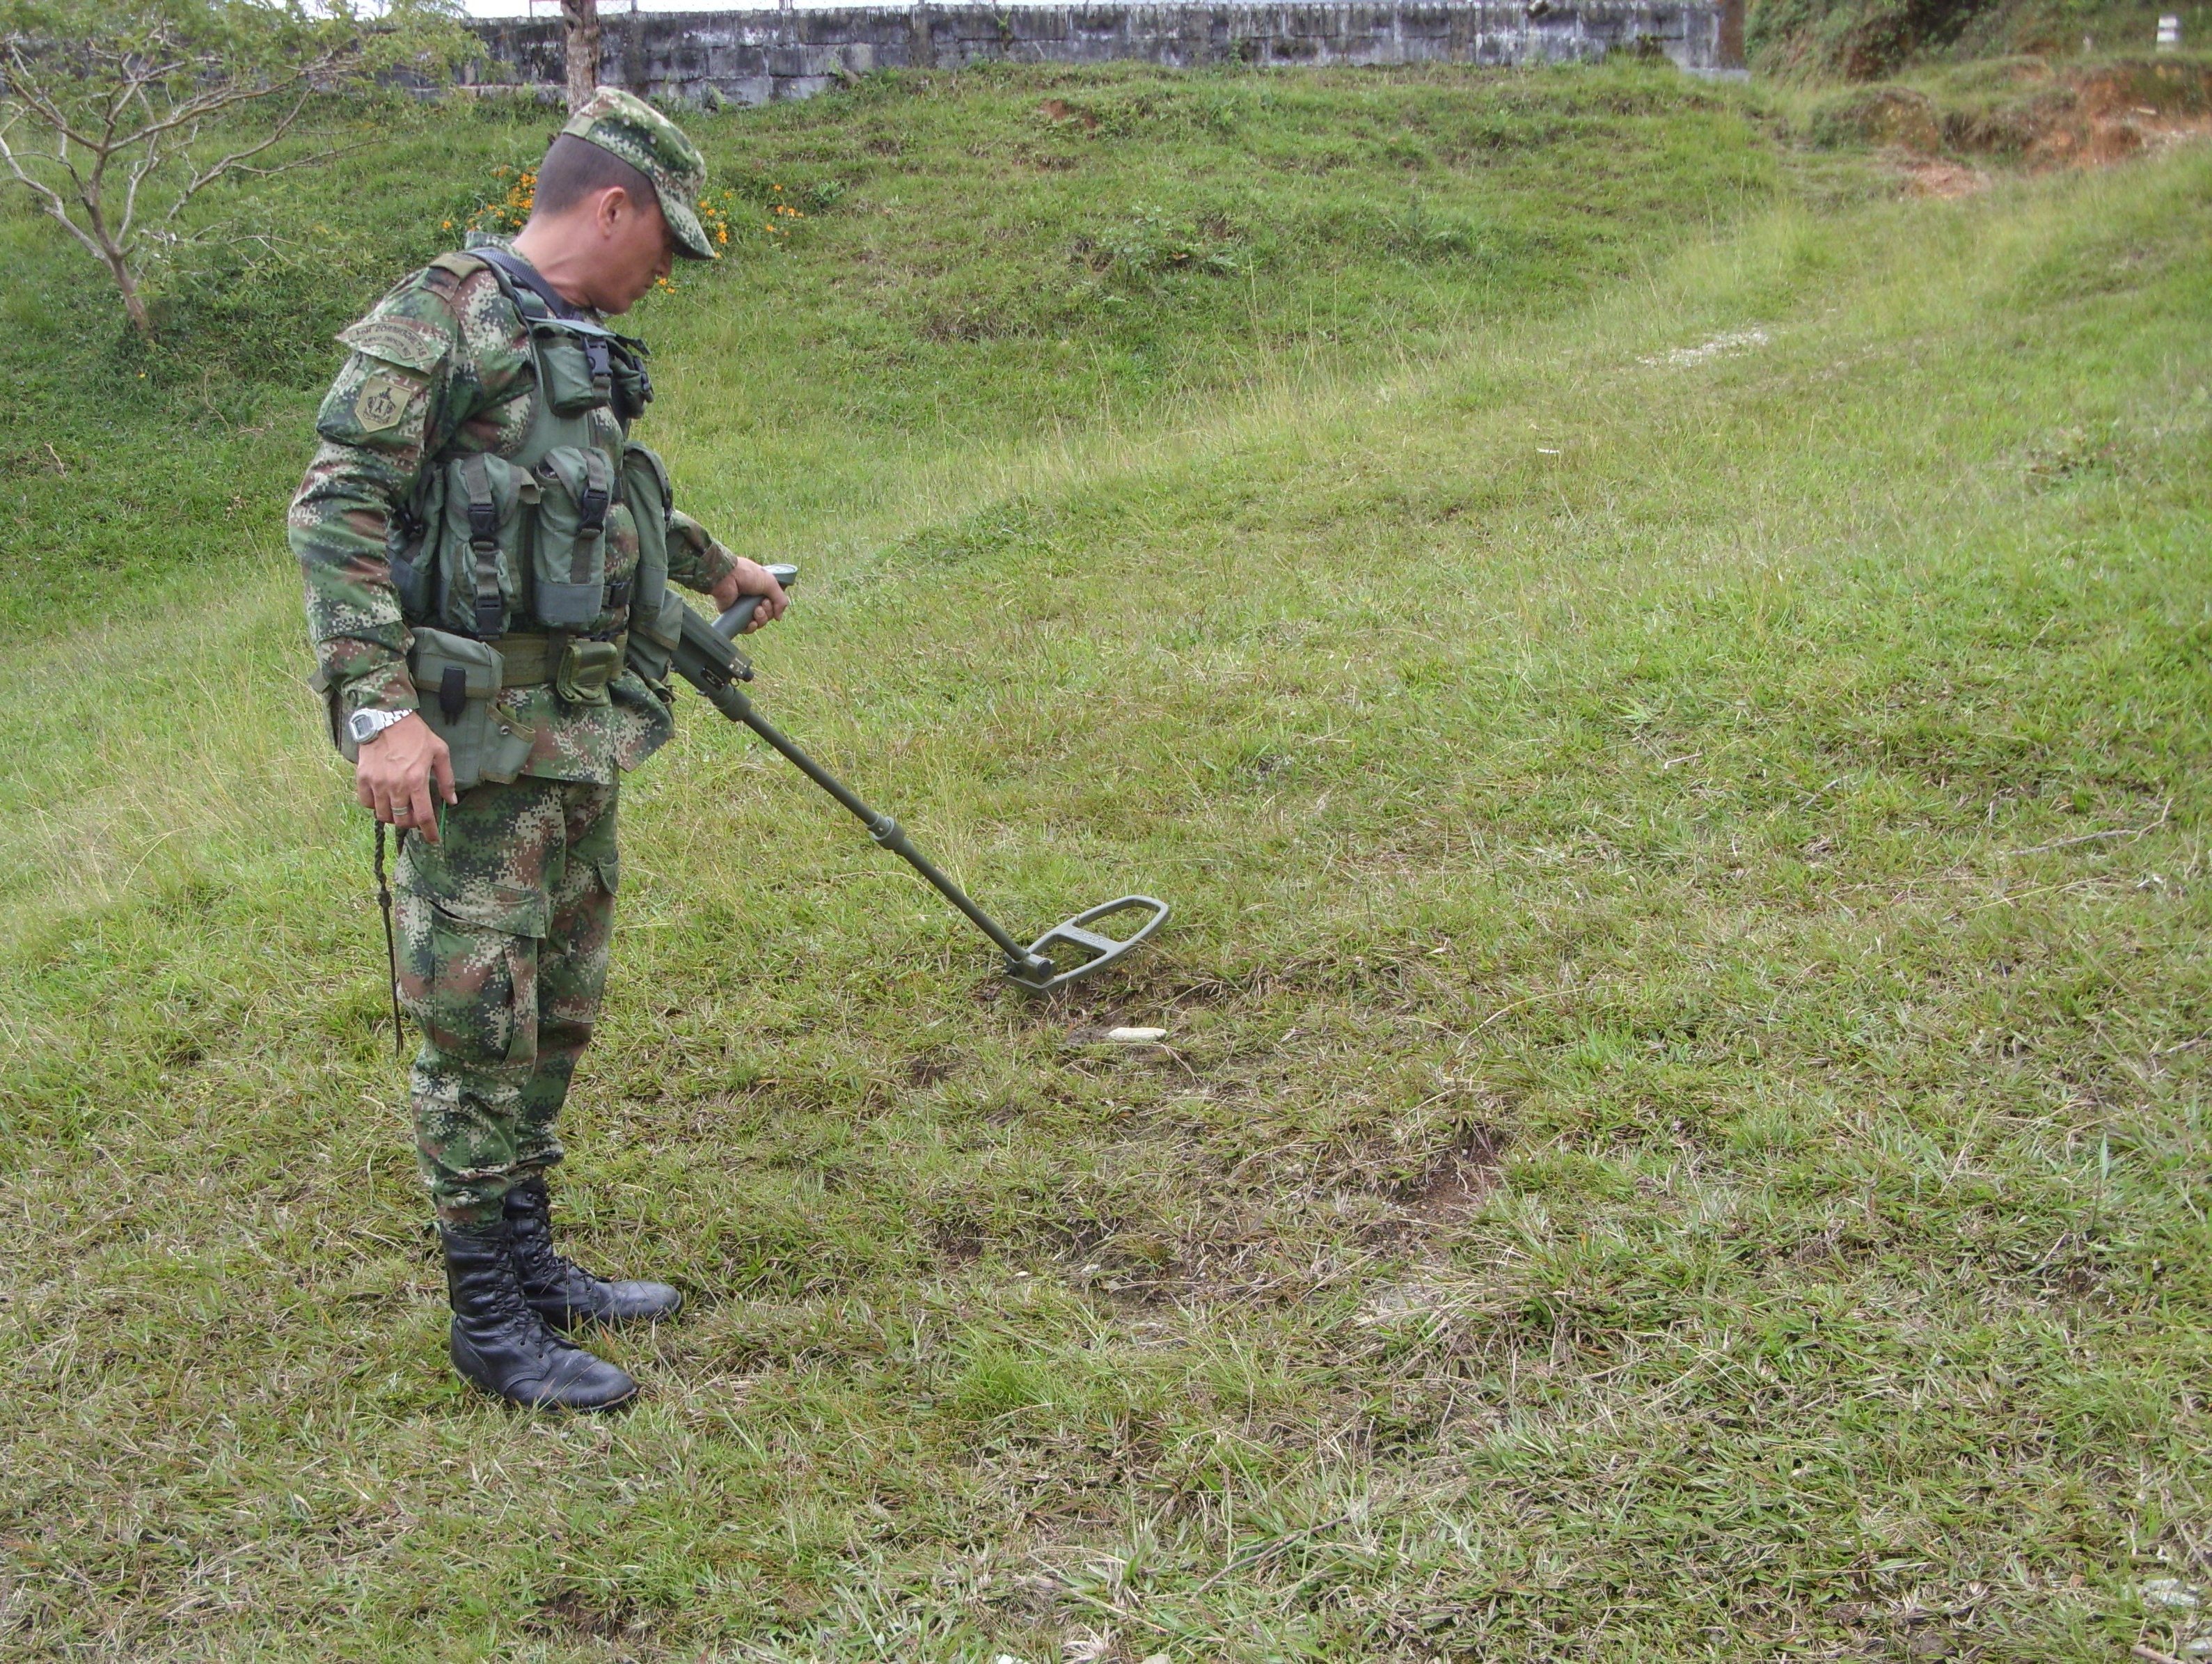 Ejército desactivo 3 minas antipersona en zona rural de Cerrito